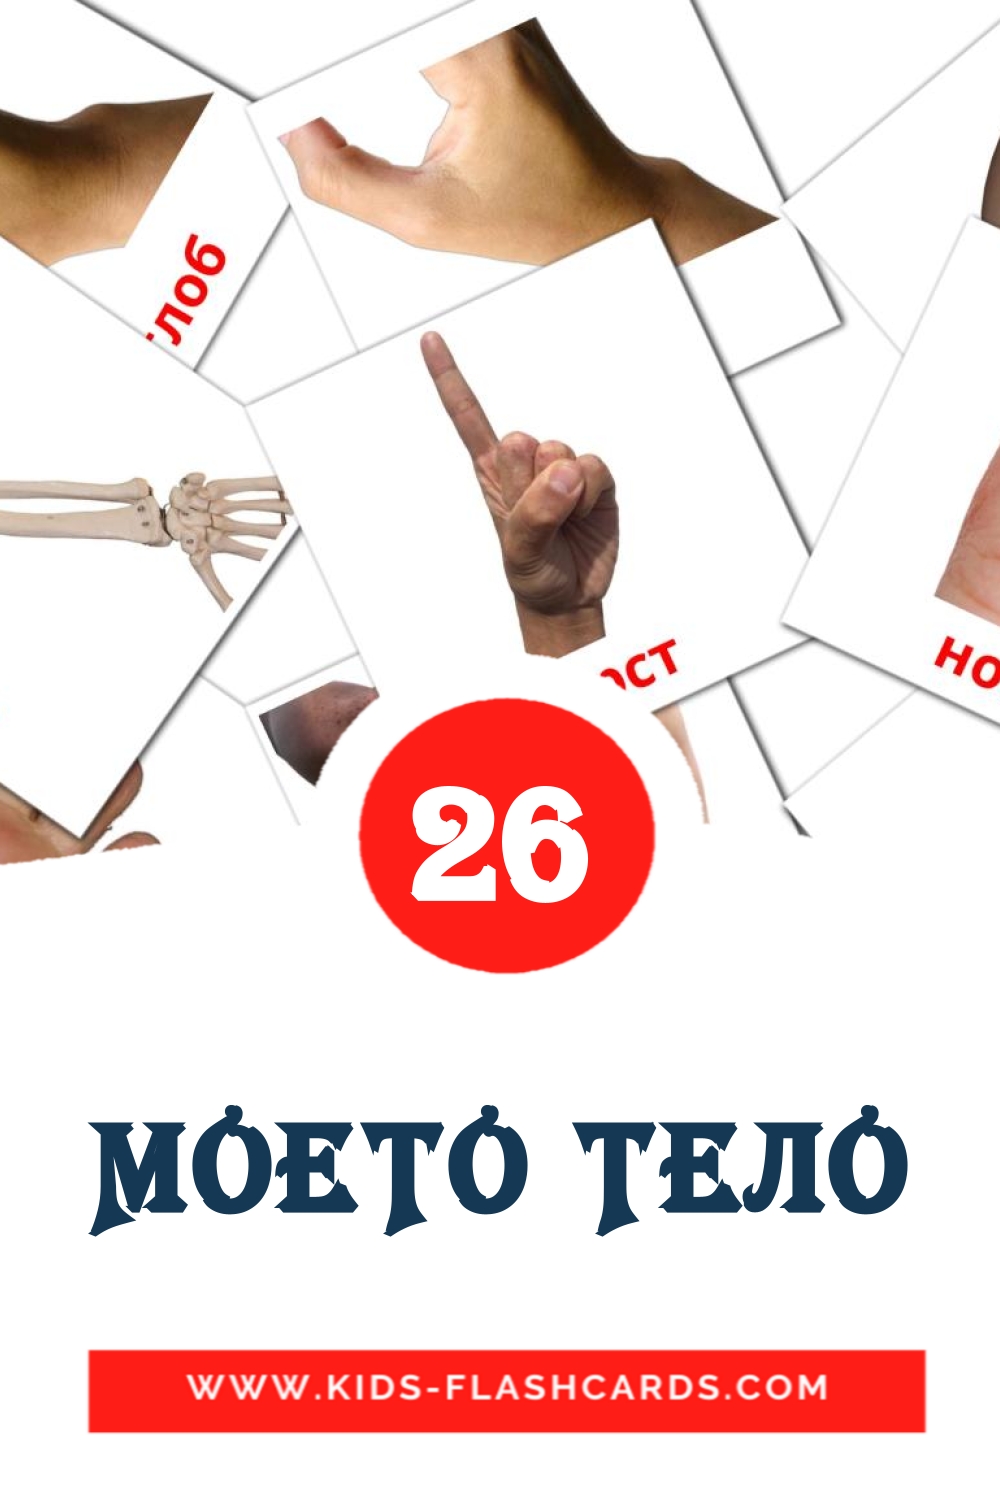 26 tarjetas didacticas de МОЕТО ТЕЛО para el jardín de infancia en macedonio